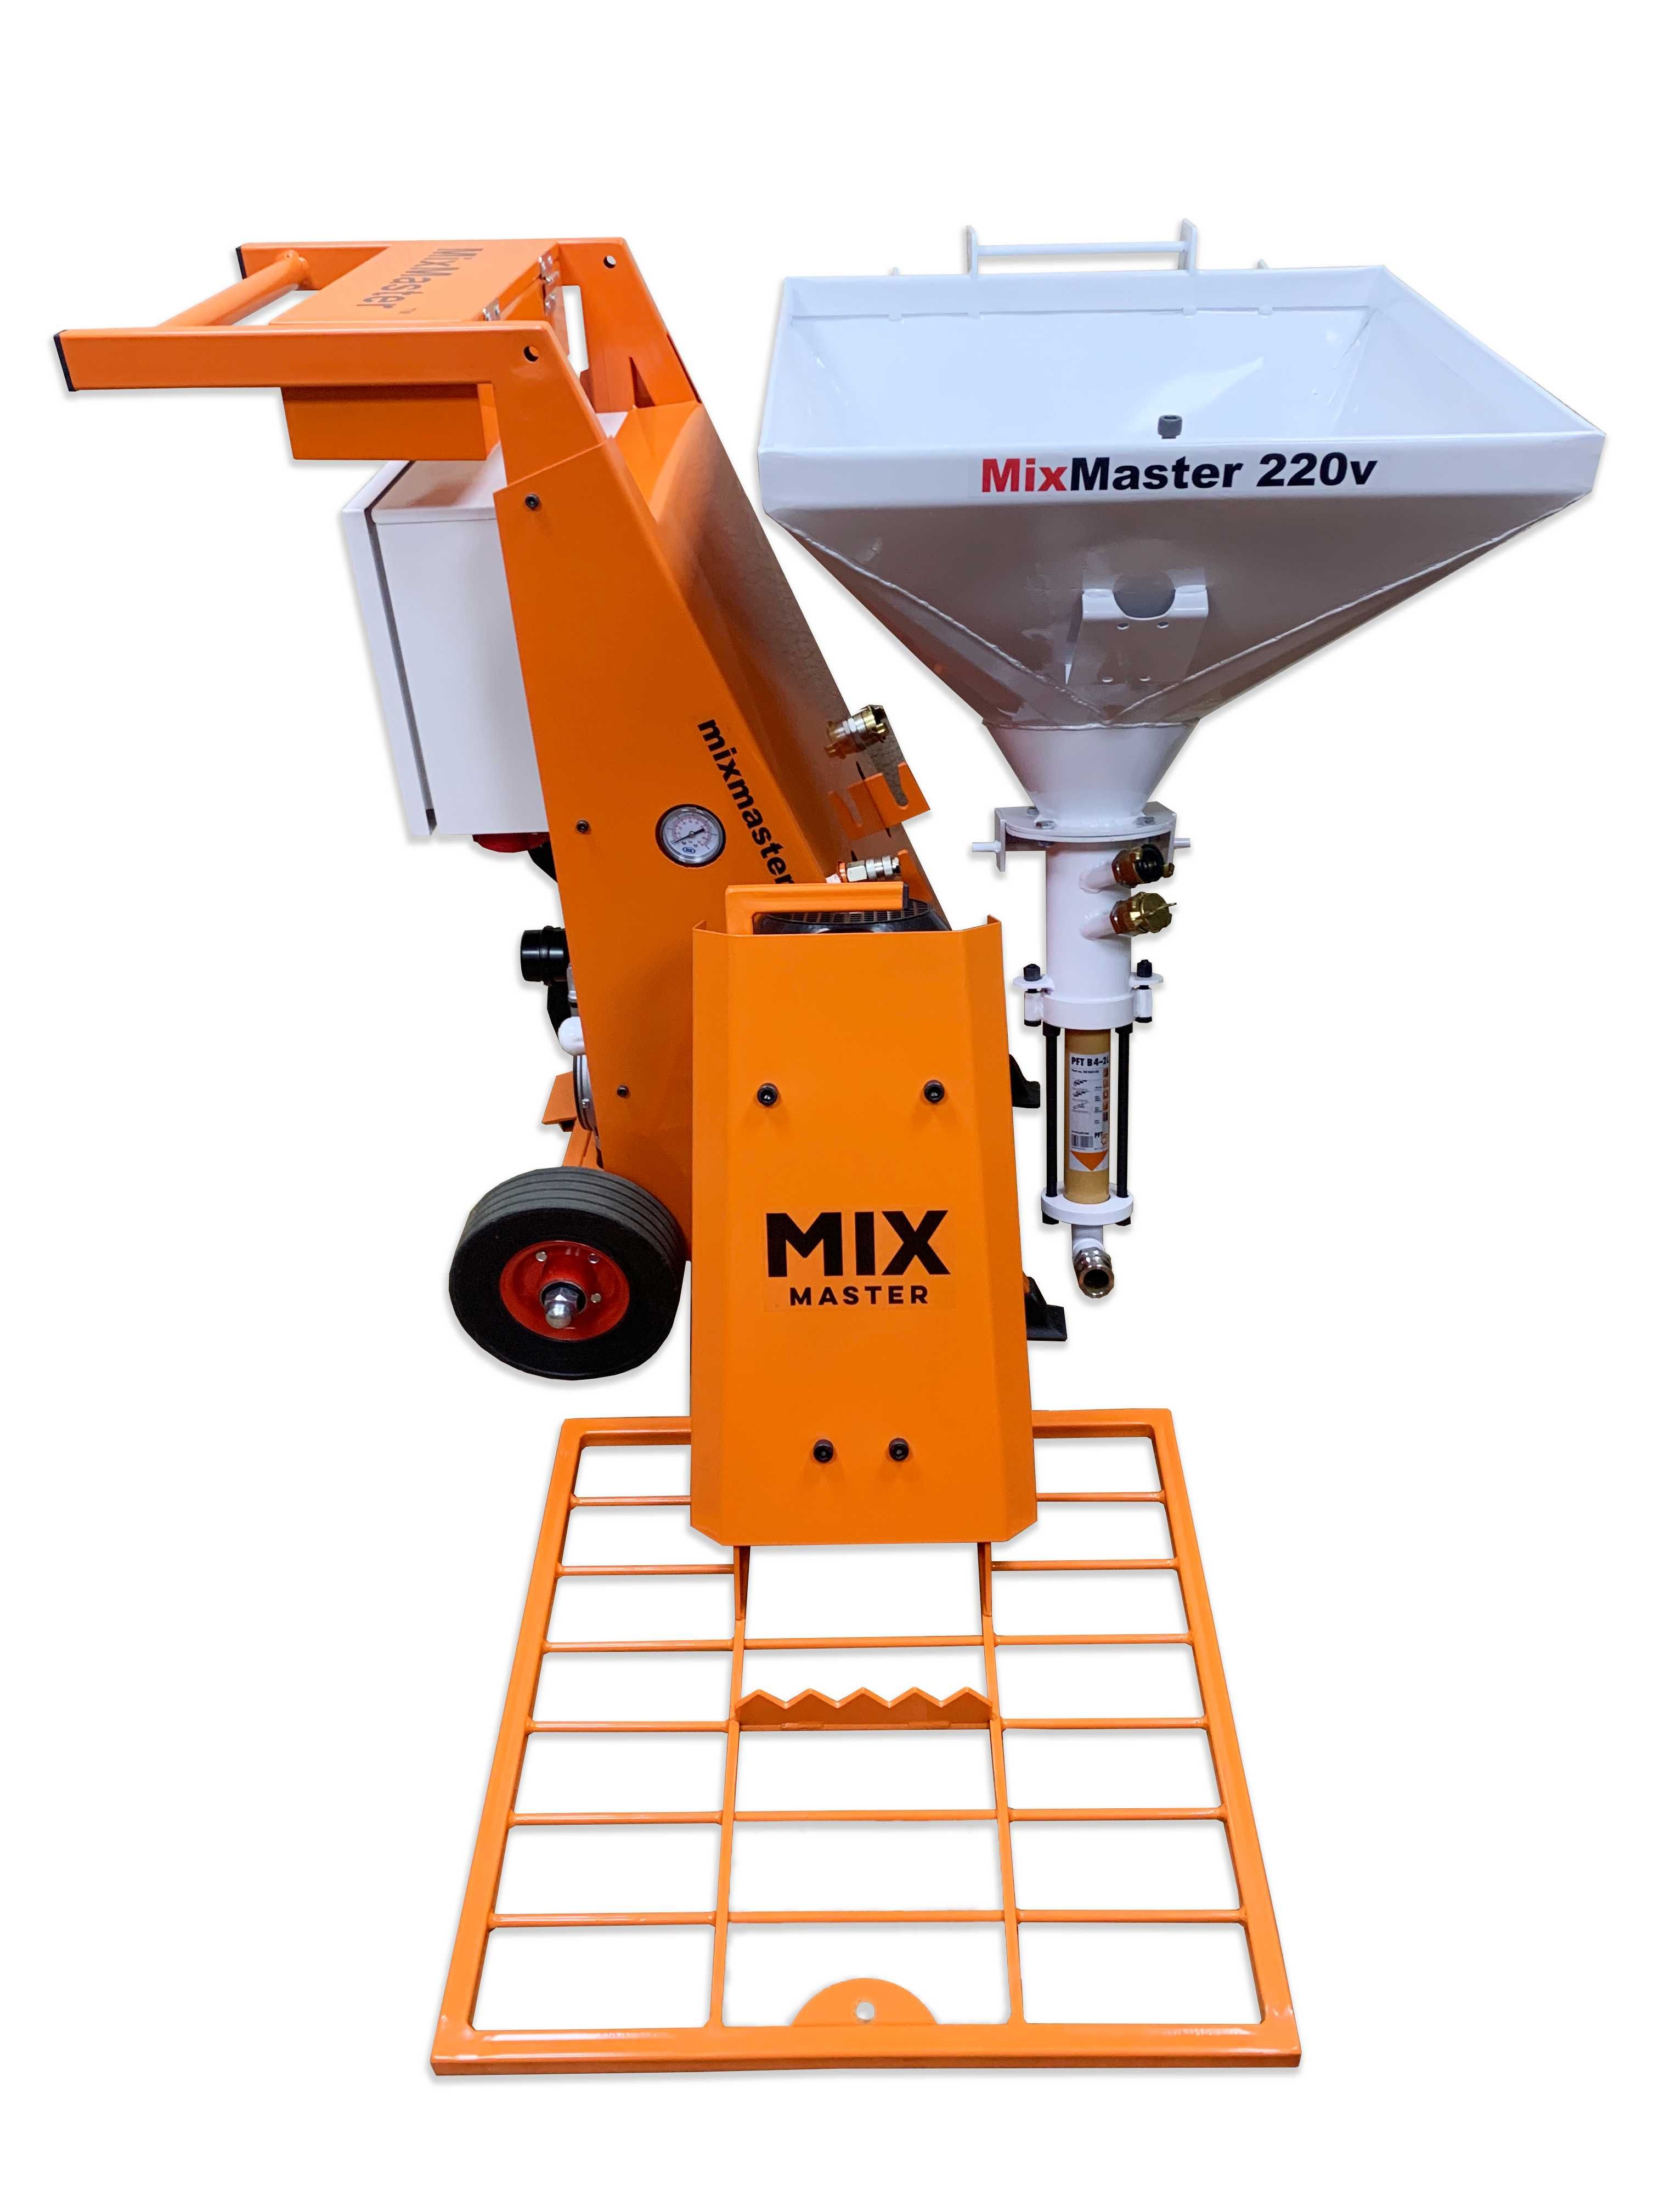 MixMaster220v, MixMaster220-380v производство штукатурных станций